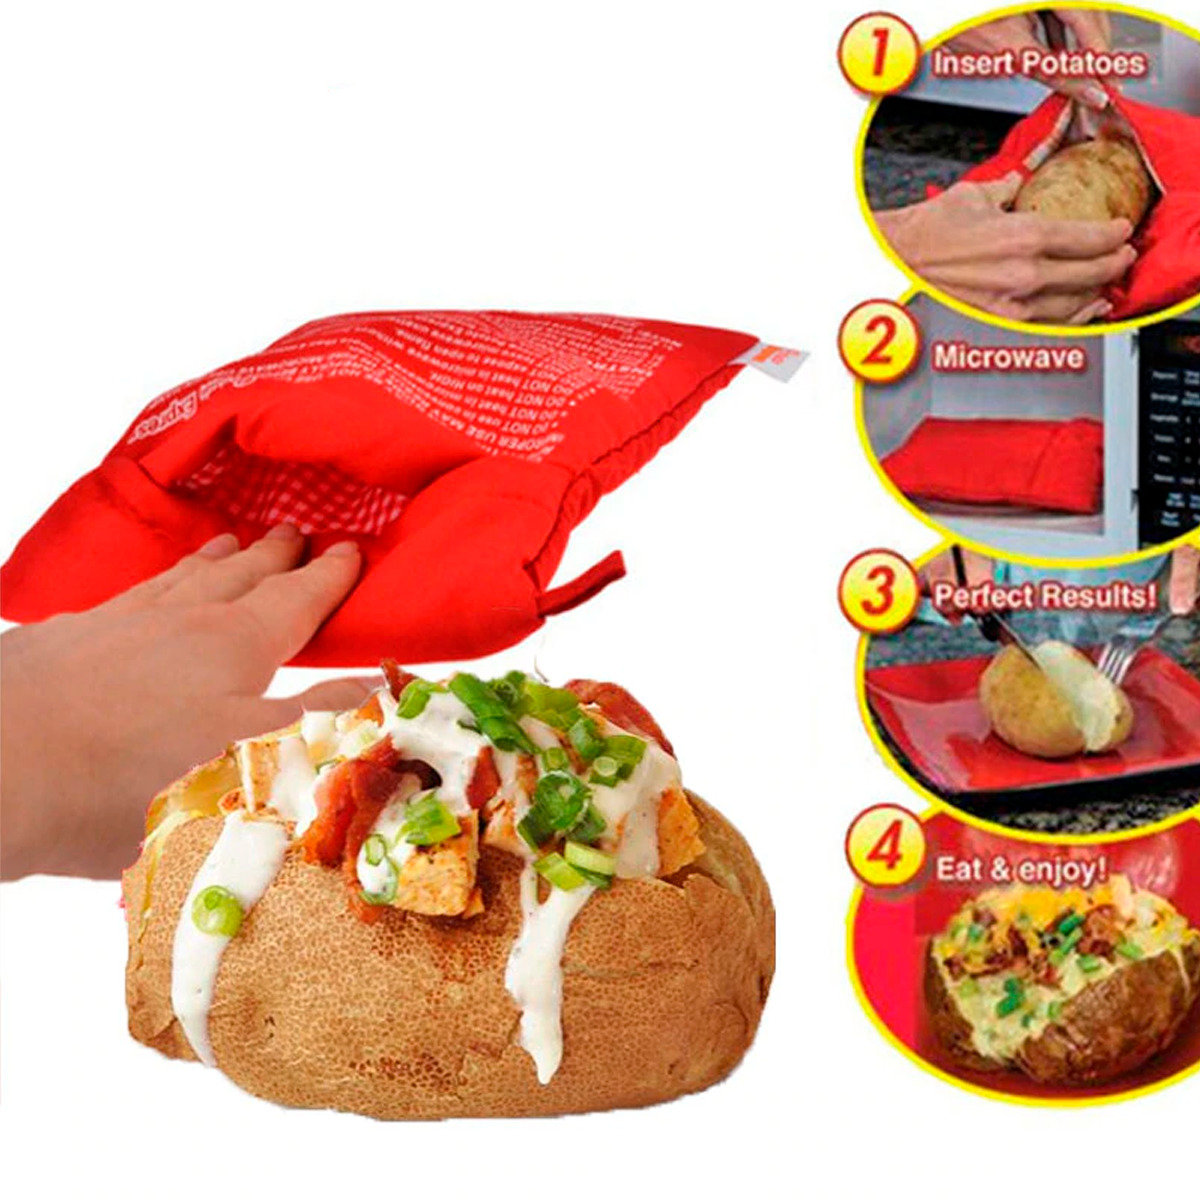 Paquete de 4 bolsas de patatas rojas para microondas, bolsa de papas  reutilizable, ideal para hornear papas en solo 4 minutos